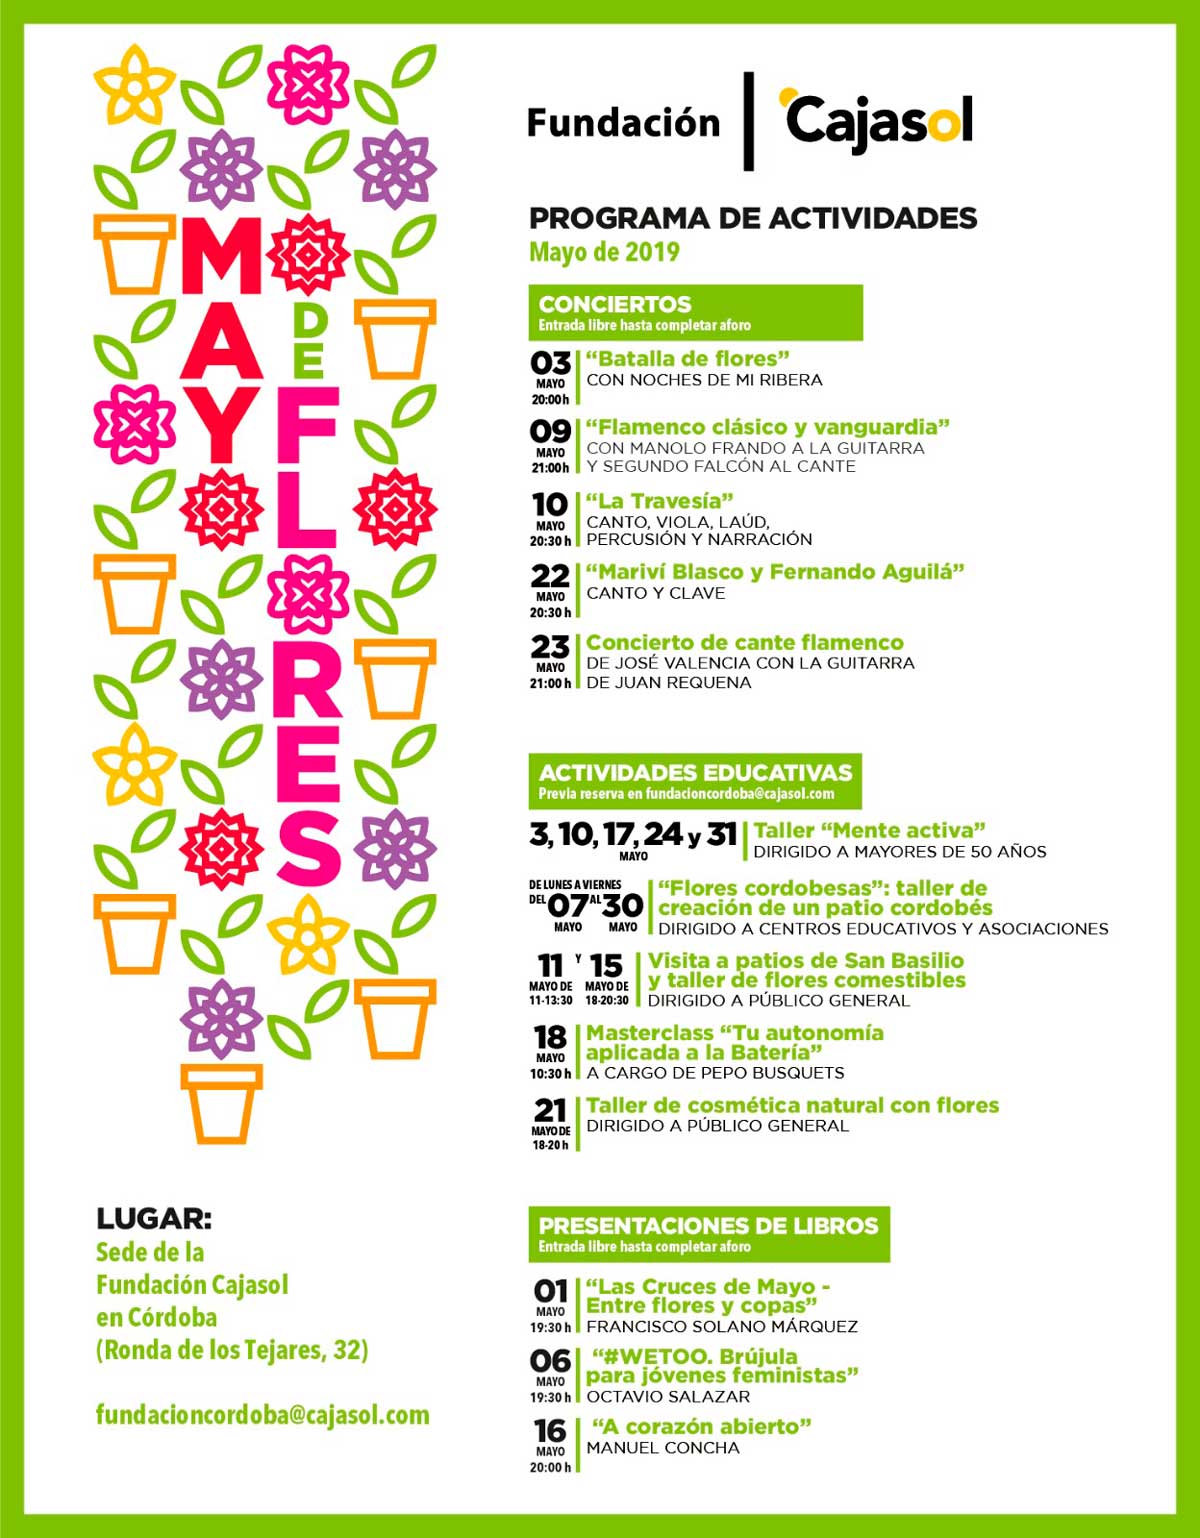 Agenda de actividades previstas en mayo de 2019 en la Fundación Cajasol (Córdoba)